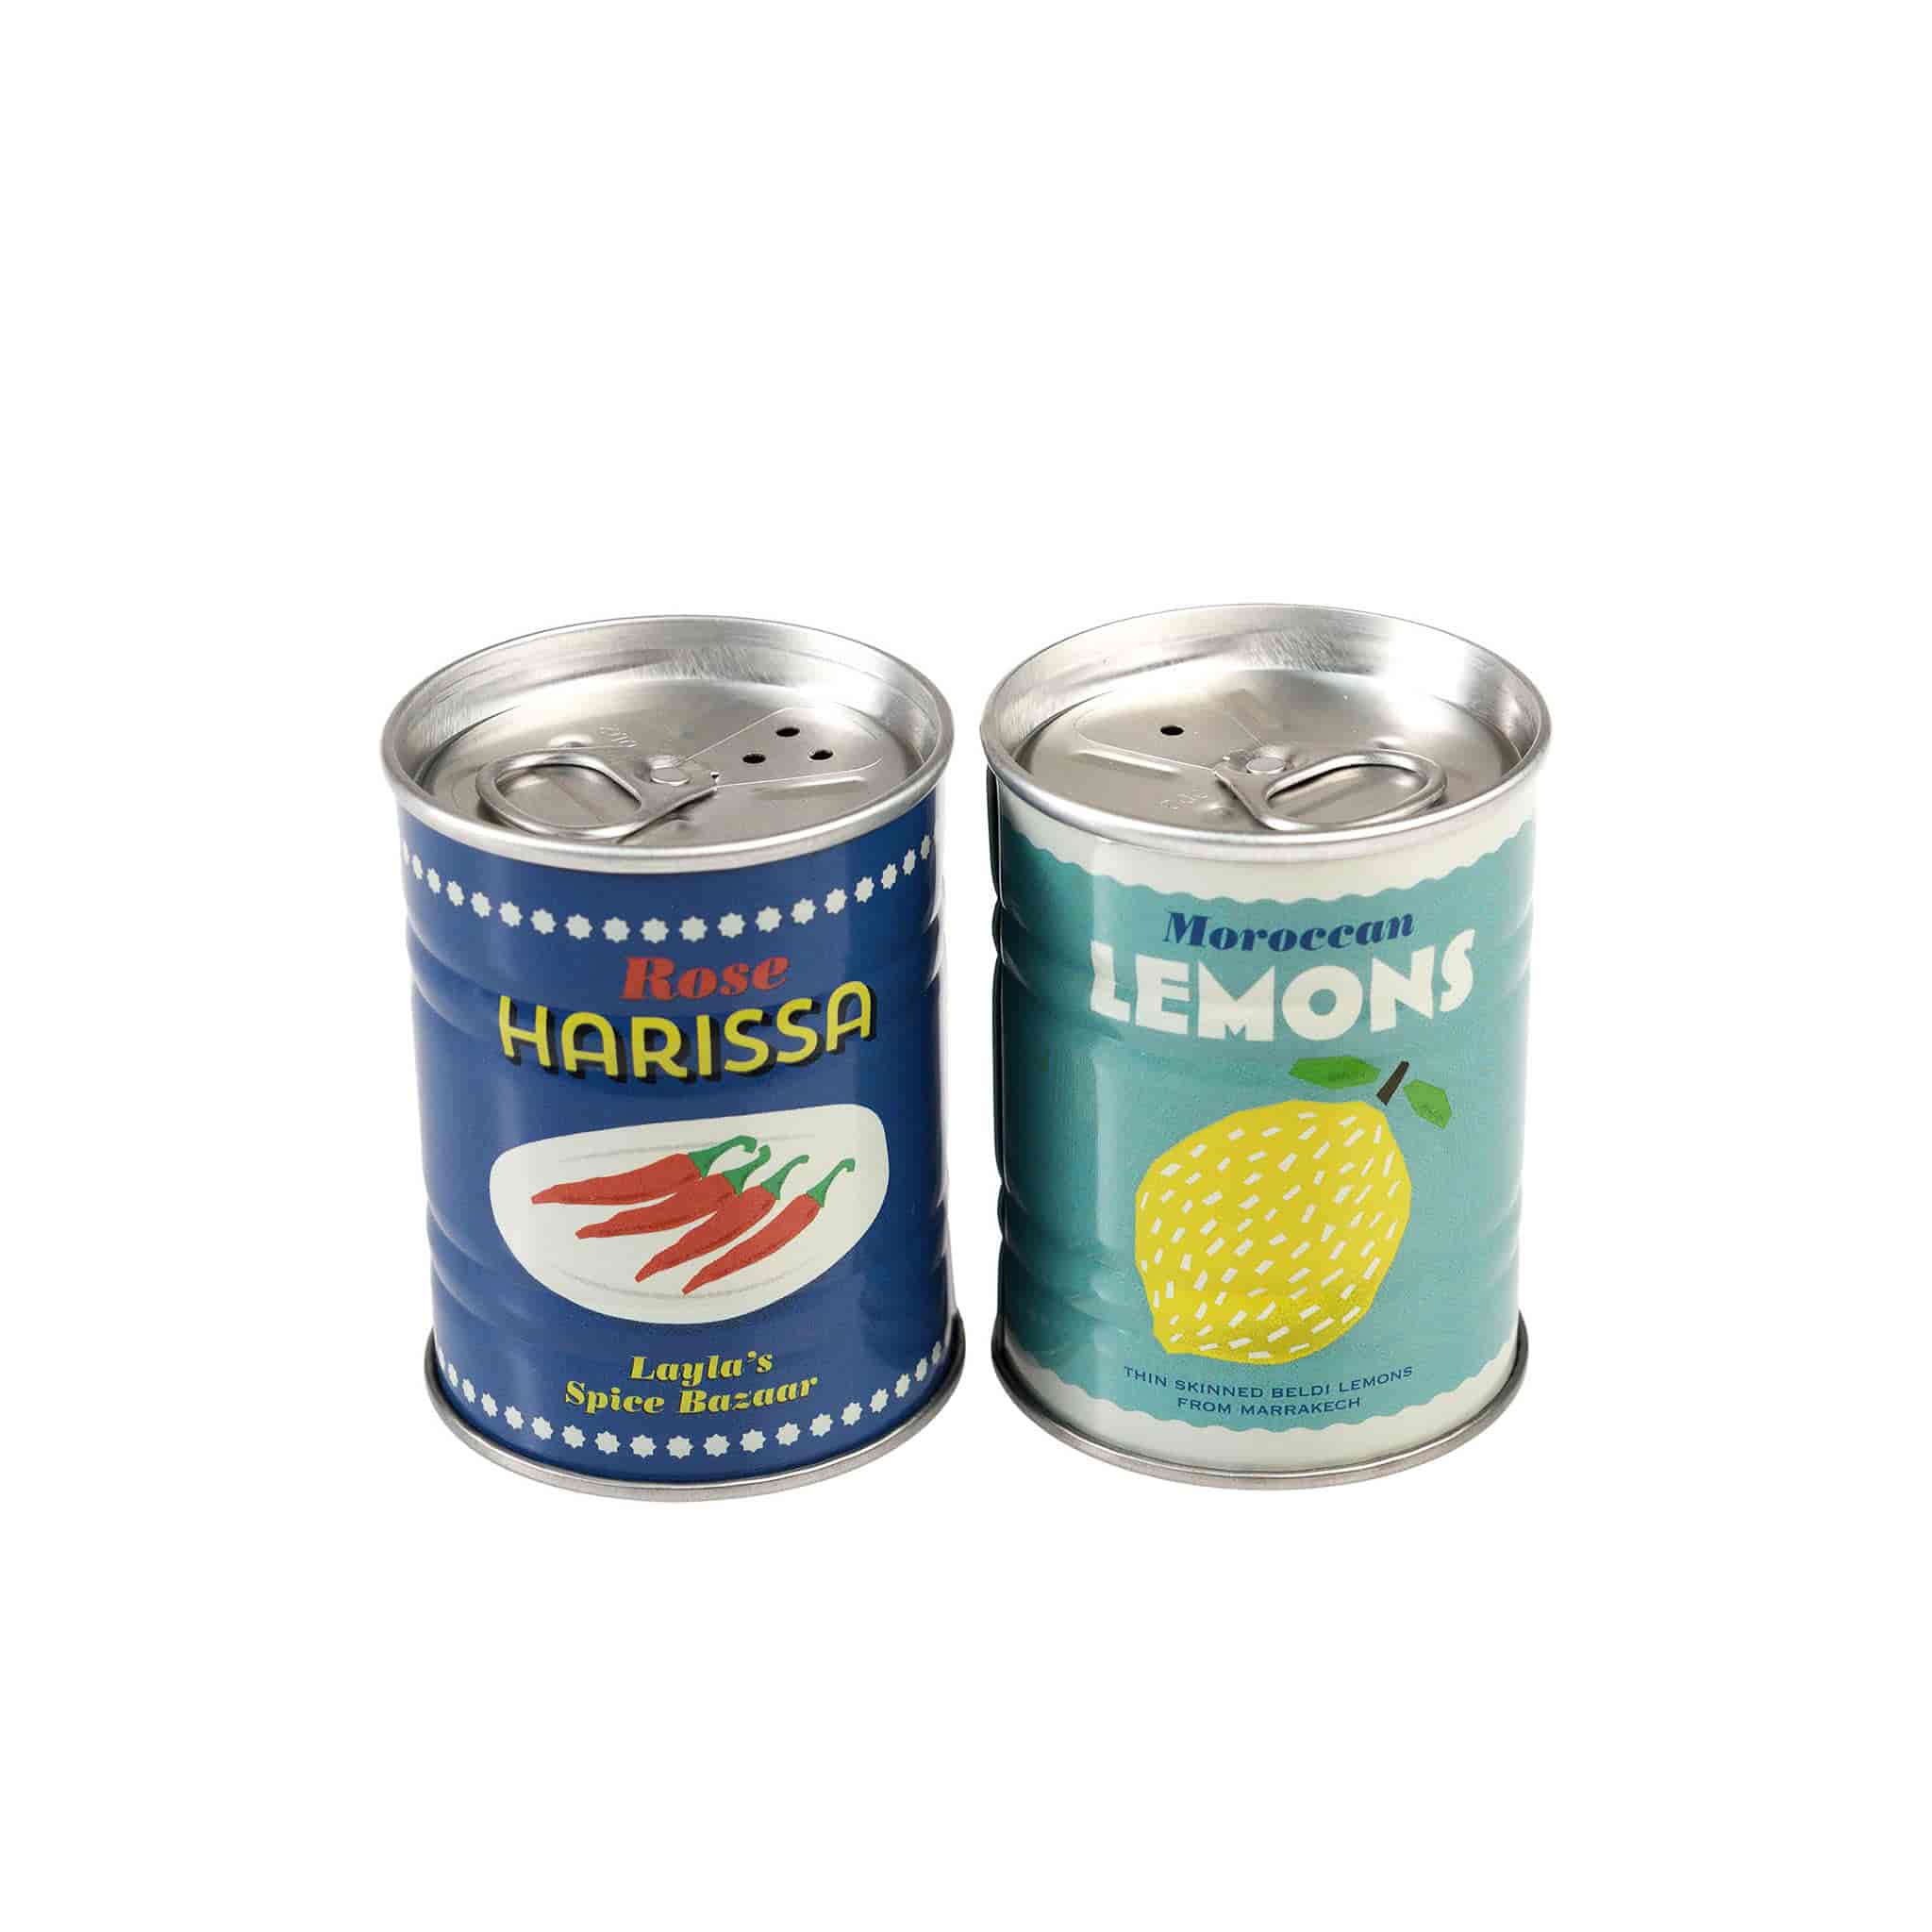 Lemon & Harissa Salt & Pepper Shaker Set